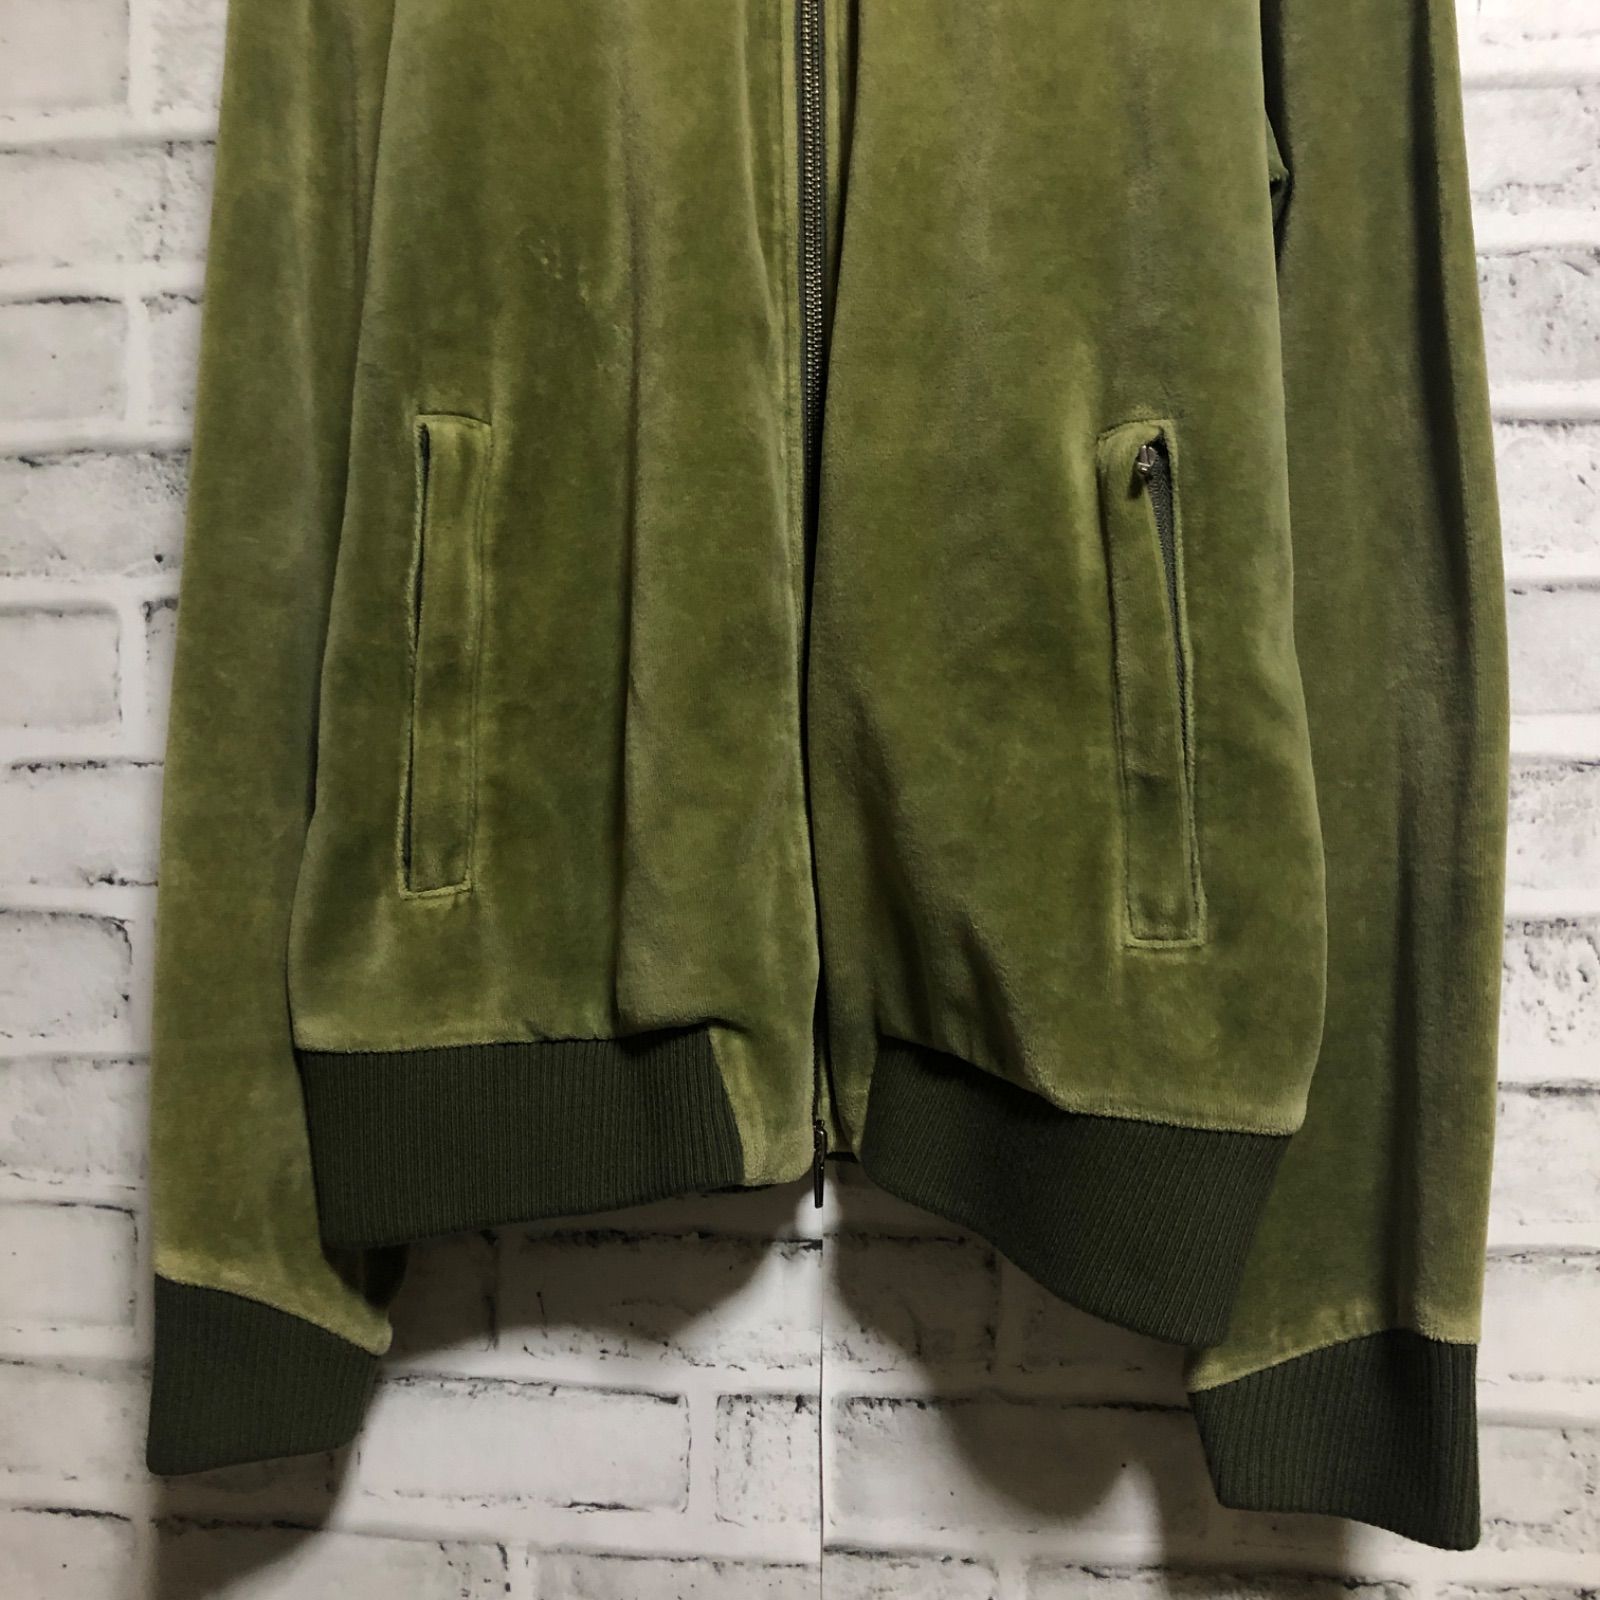 希少デザイン XL⭐️PUMA トラックジャケット 刺繍ロゴ ベロア カーキ濃緑